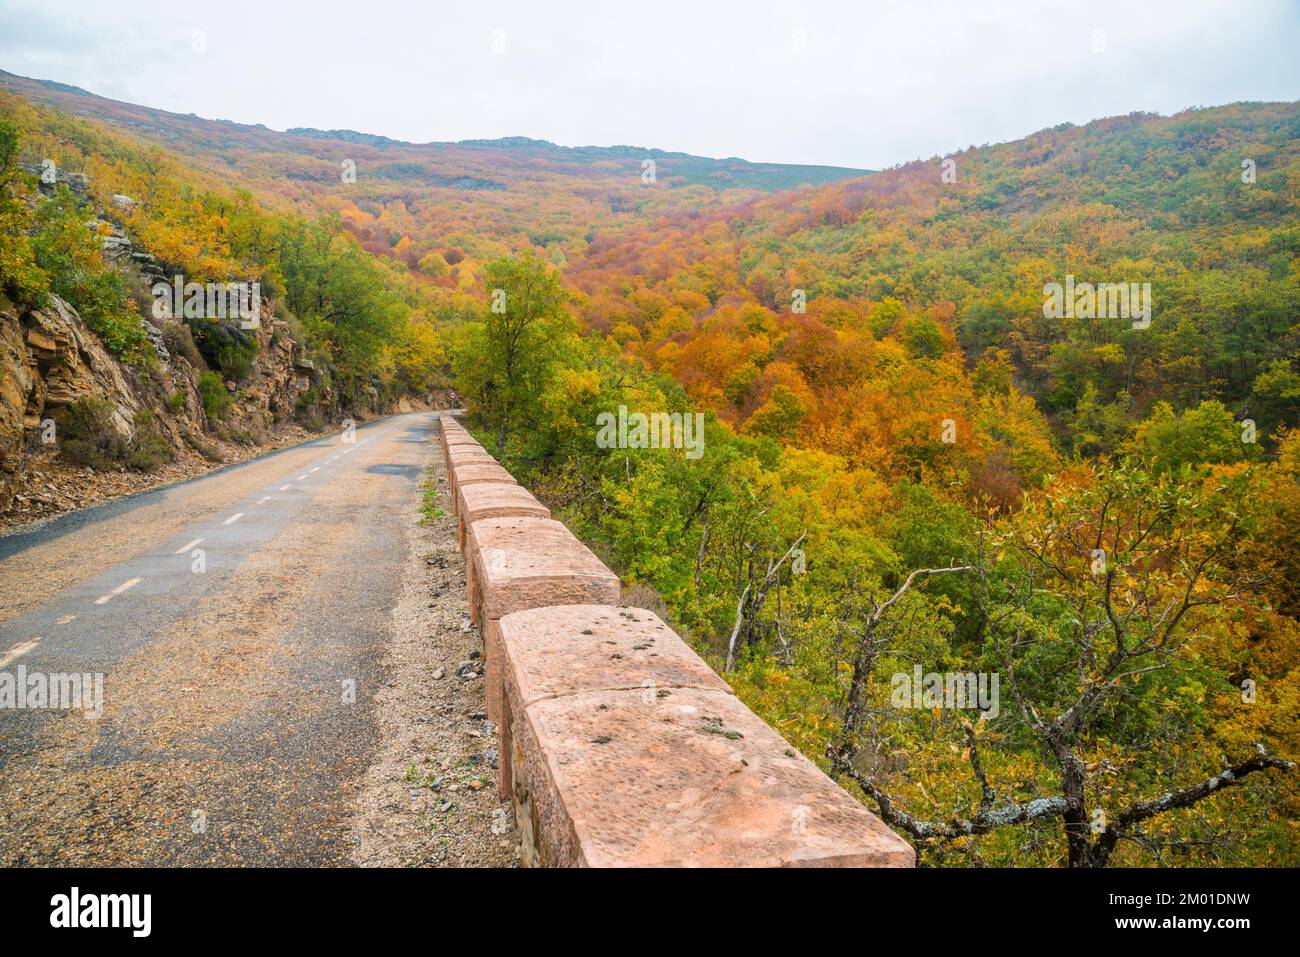 Road to La Quesera mountain pass and La Pedrosa beech forest. Riofrio de Riaza, Segovia province, Castilla Leon, Spain. Stock Photo